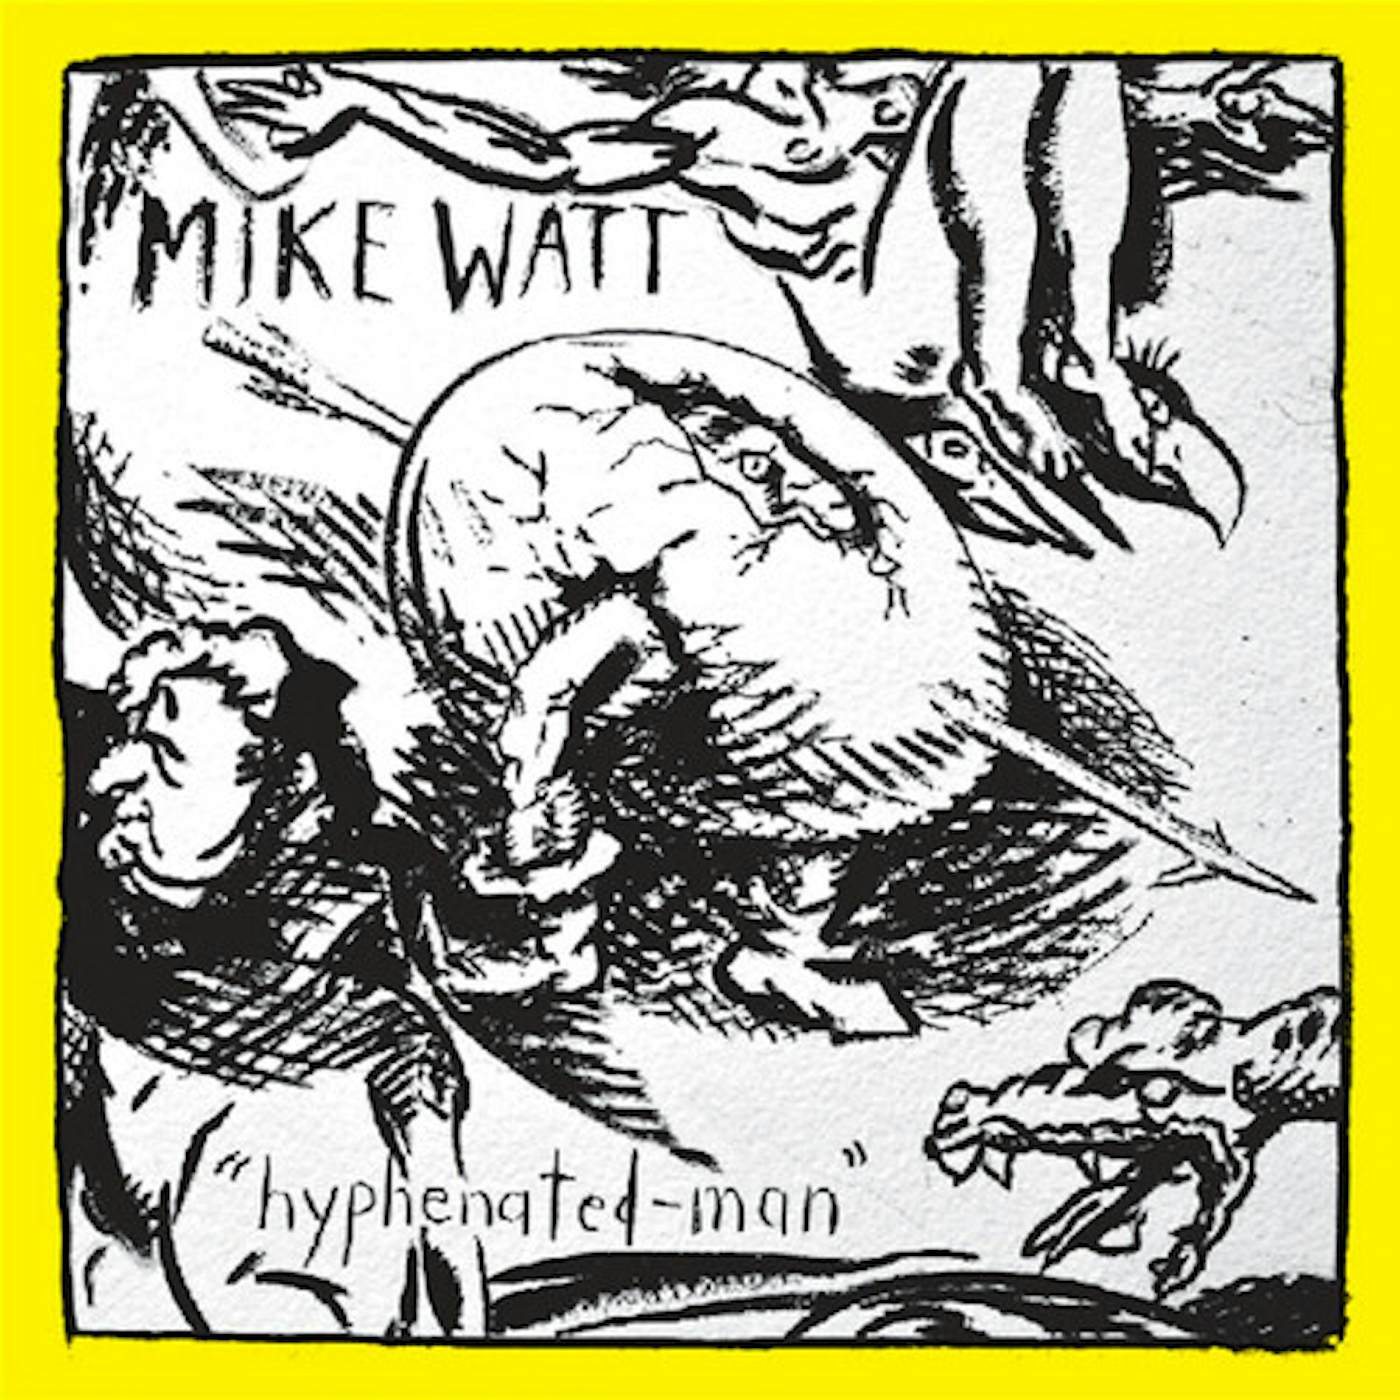 Mike Watt HYPHENATED-MAN - YELLOW & BLACK SWIRL Vinyl Record